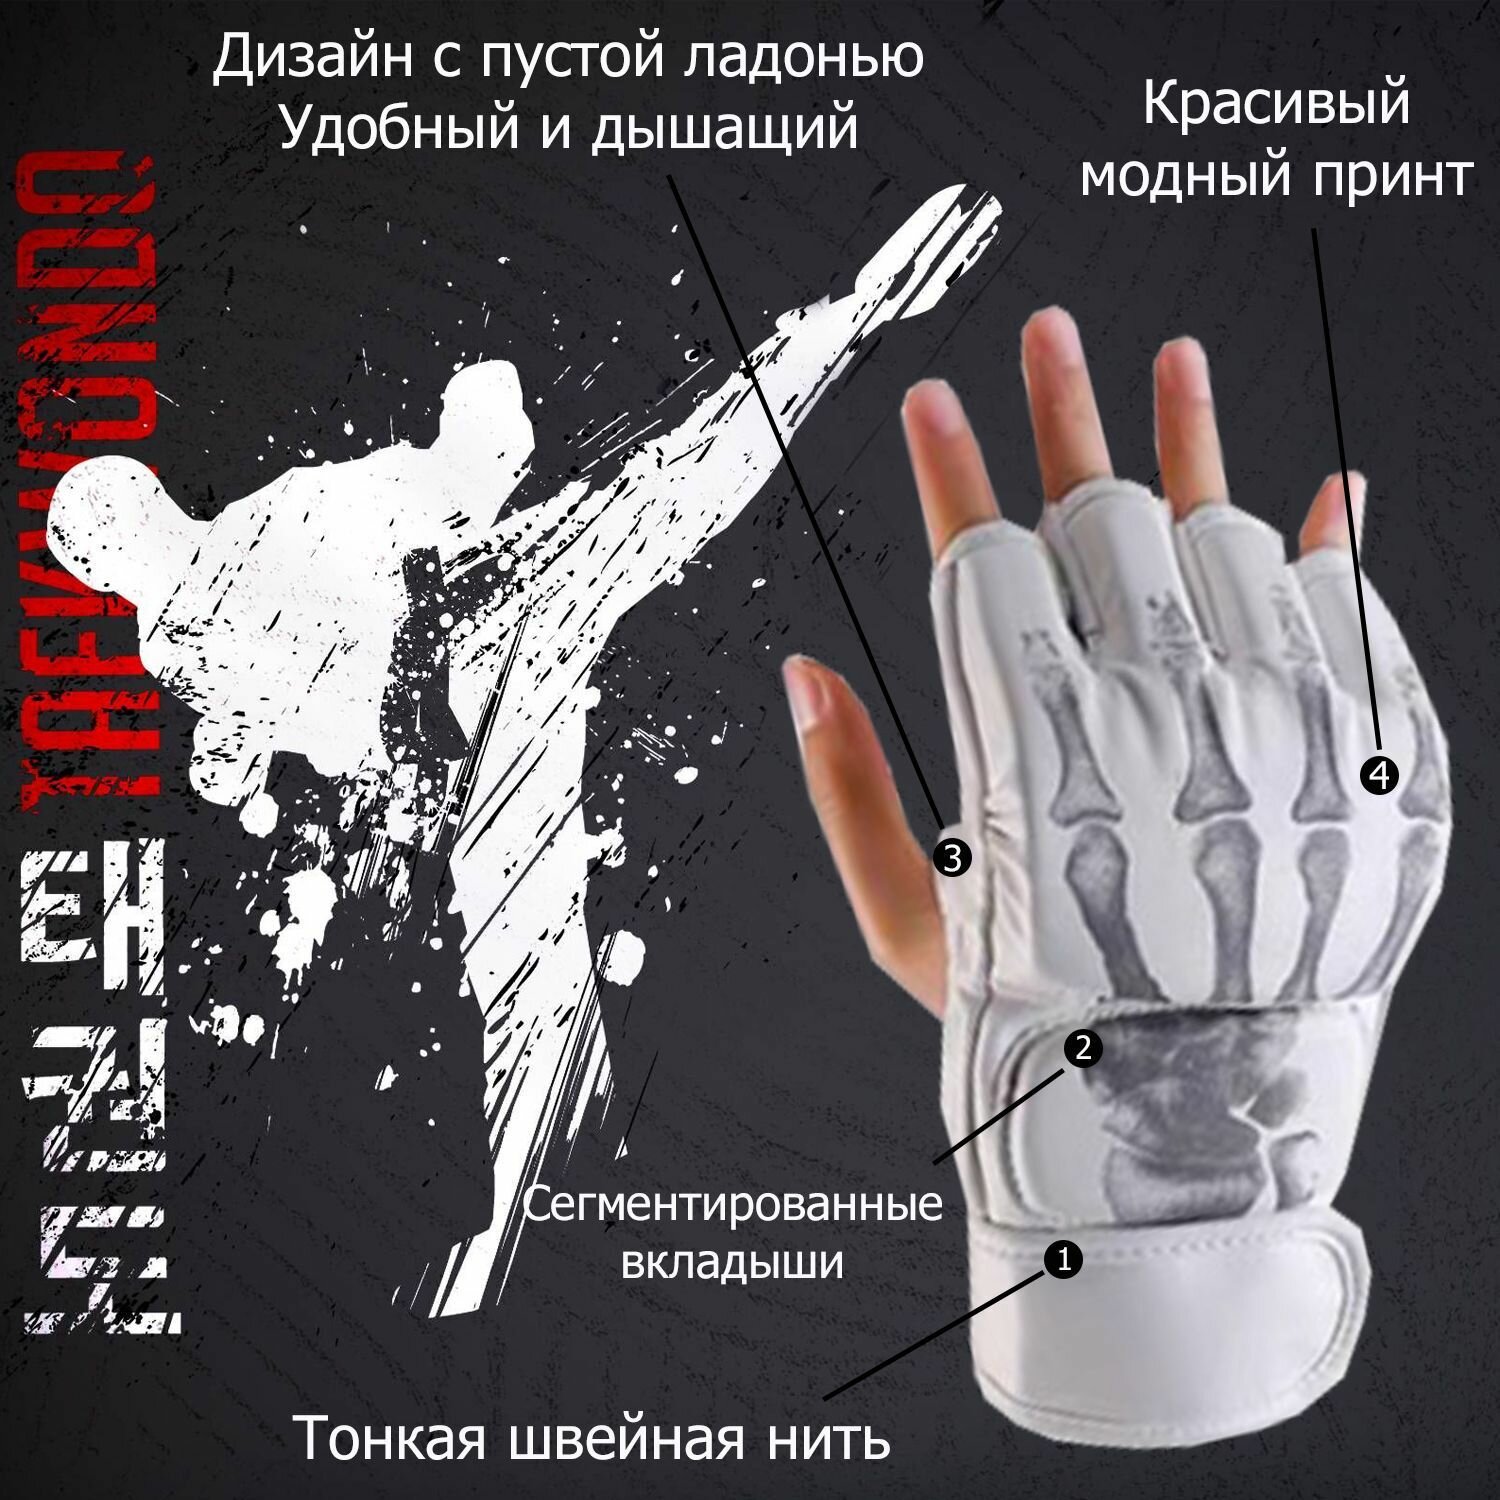 Перчатки для единоборств, ММА, Шингарды MMA 4-унции